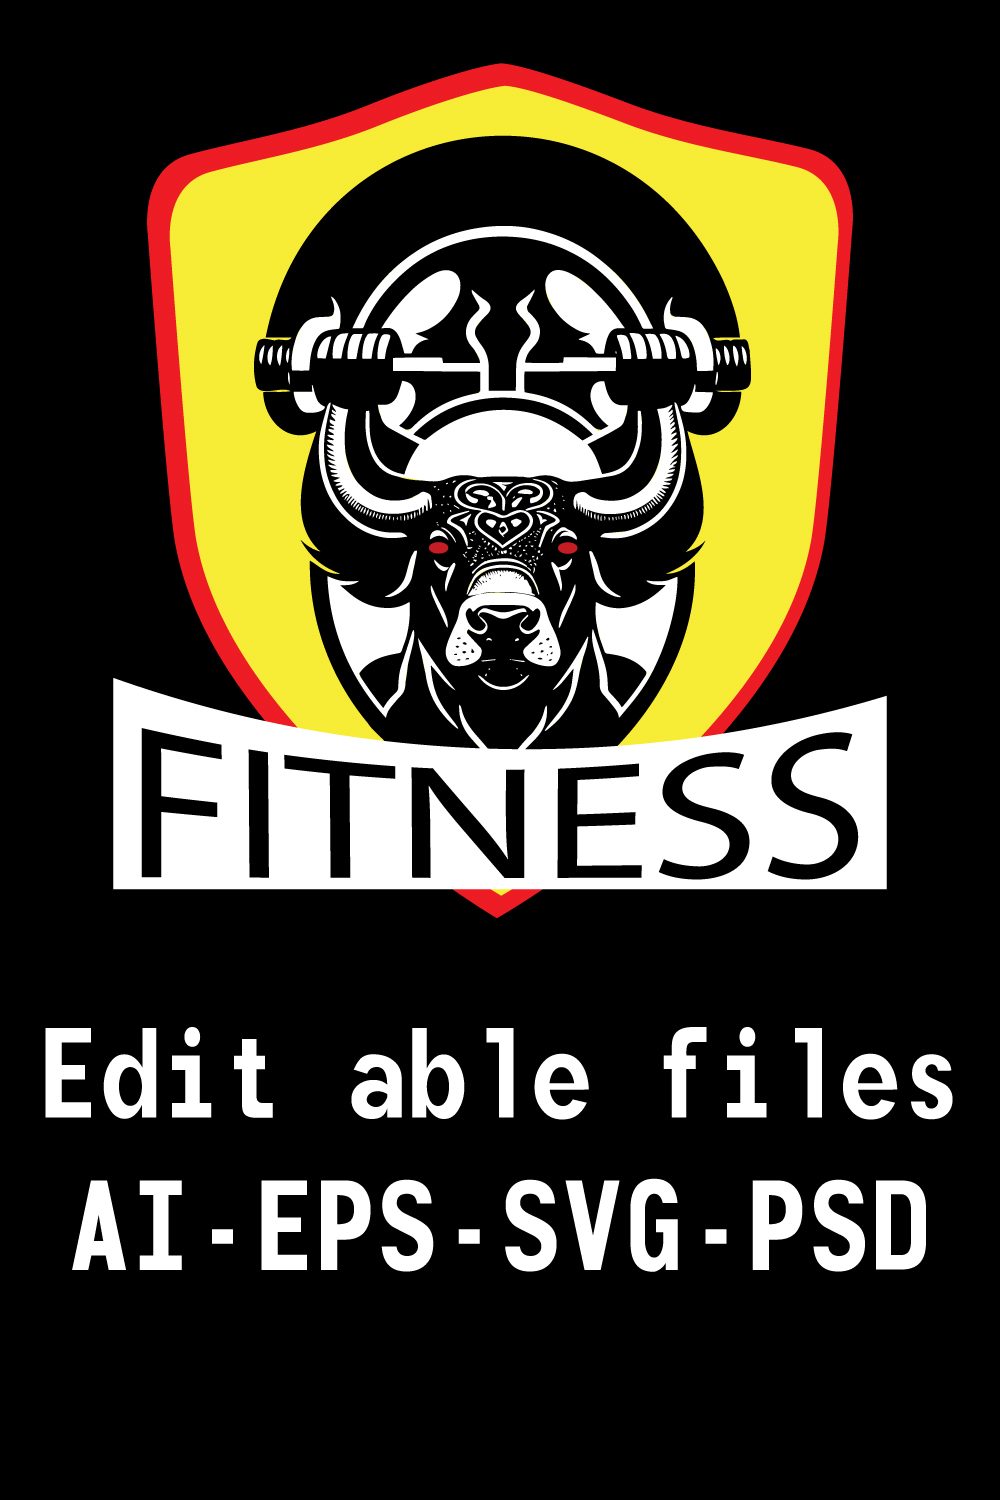 Bull fitness logo pinterest preview image.